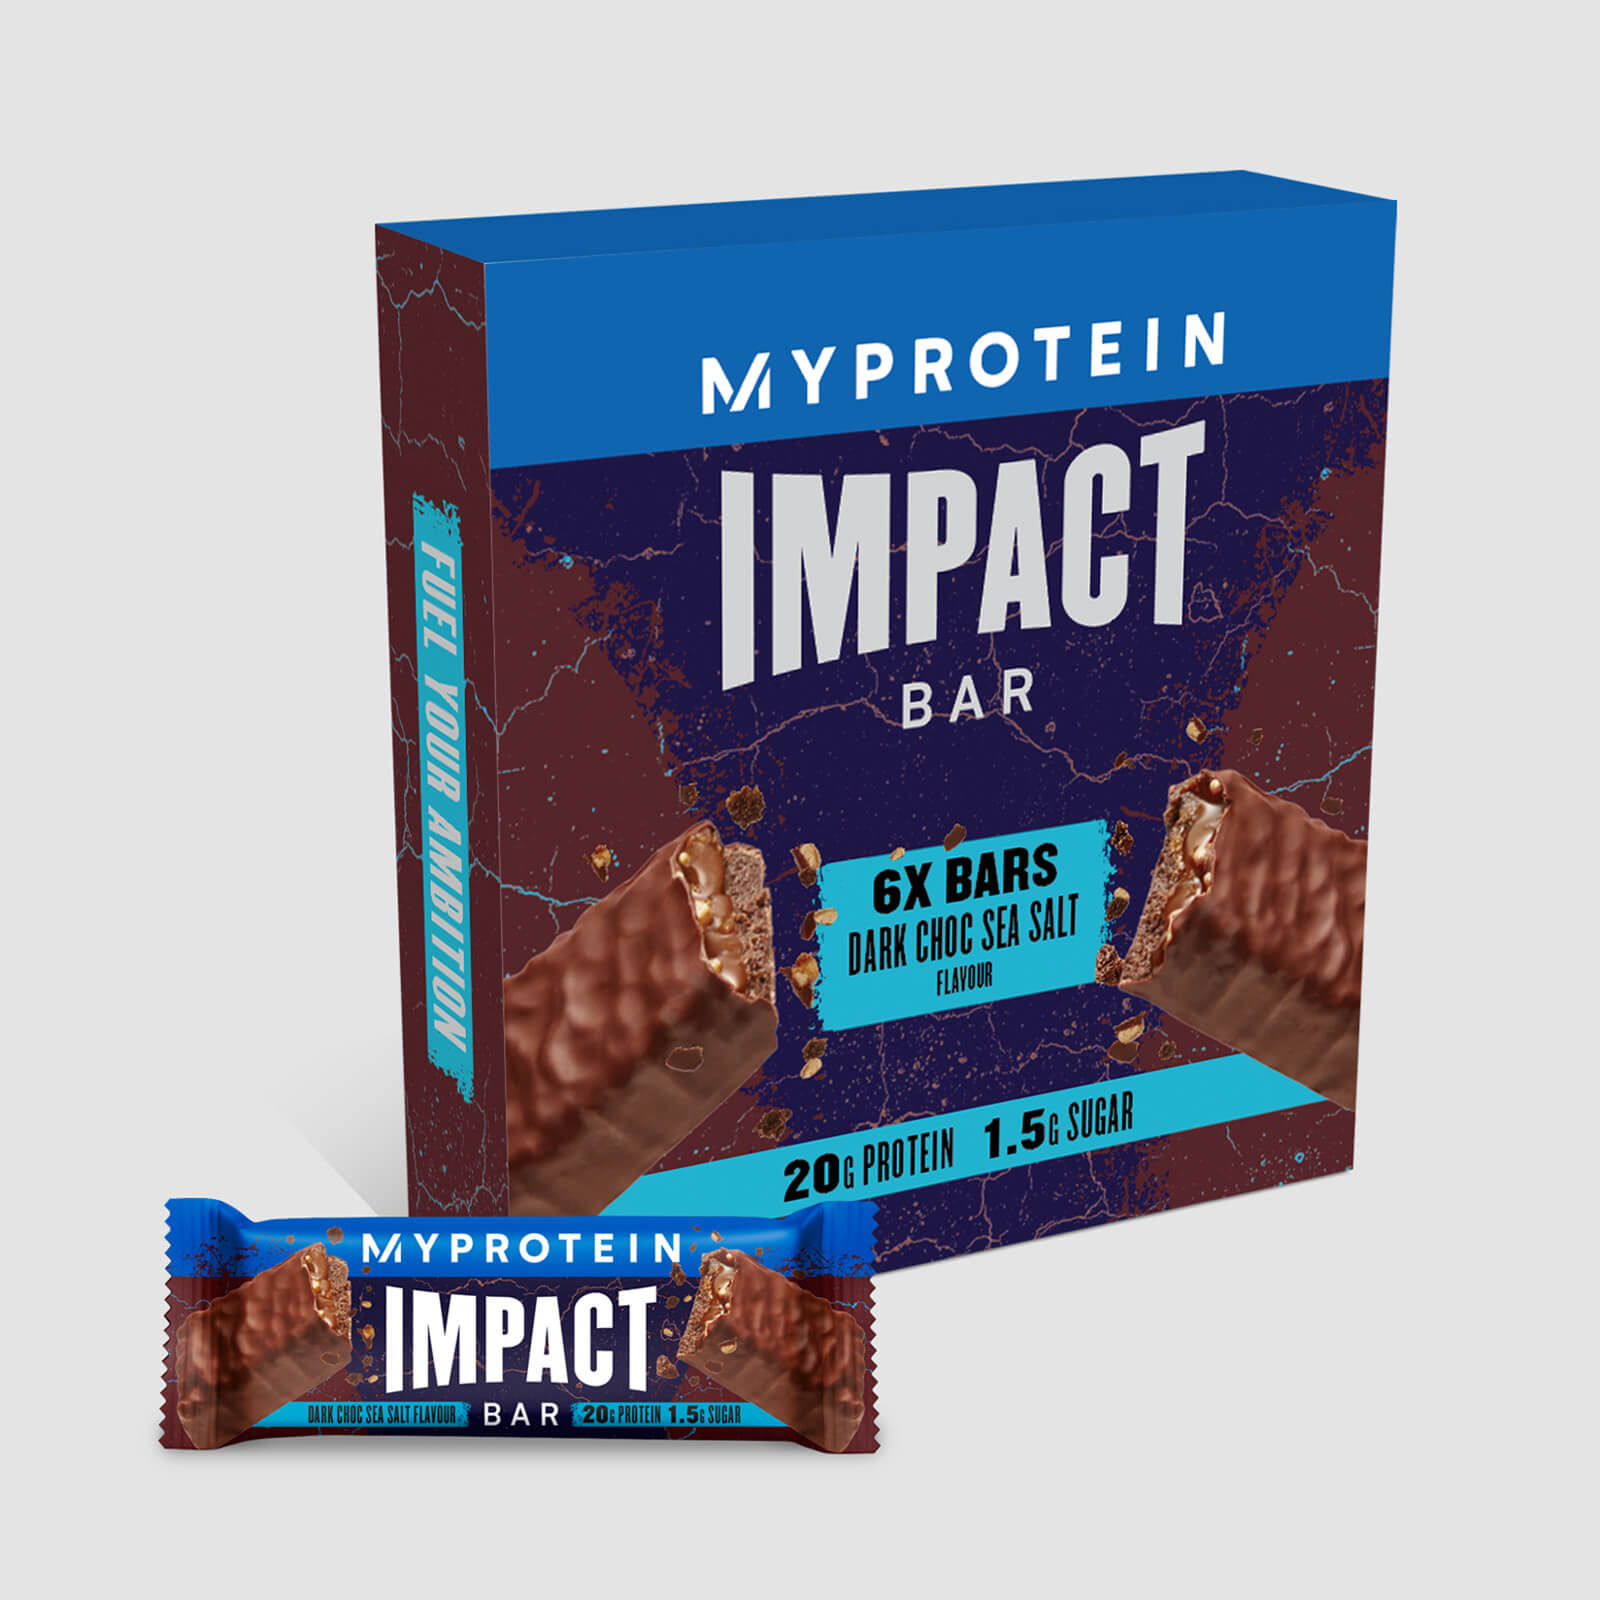 Myprotein Impact Protein Bar - 6Bars - Dark Chocolate Sea Salt